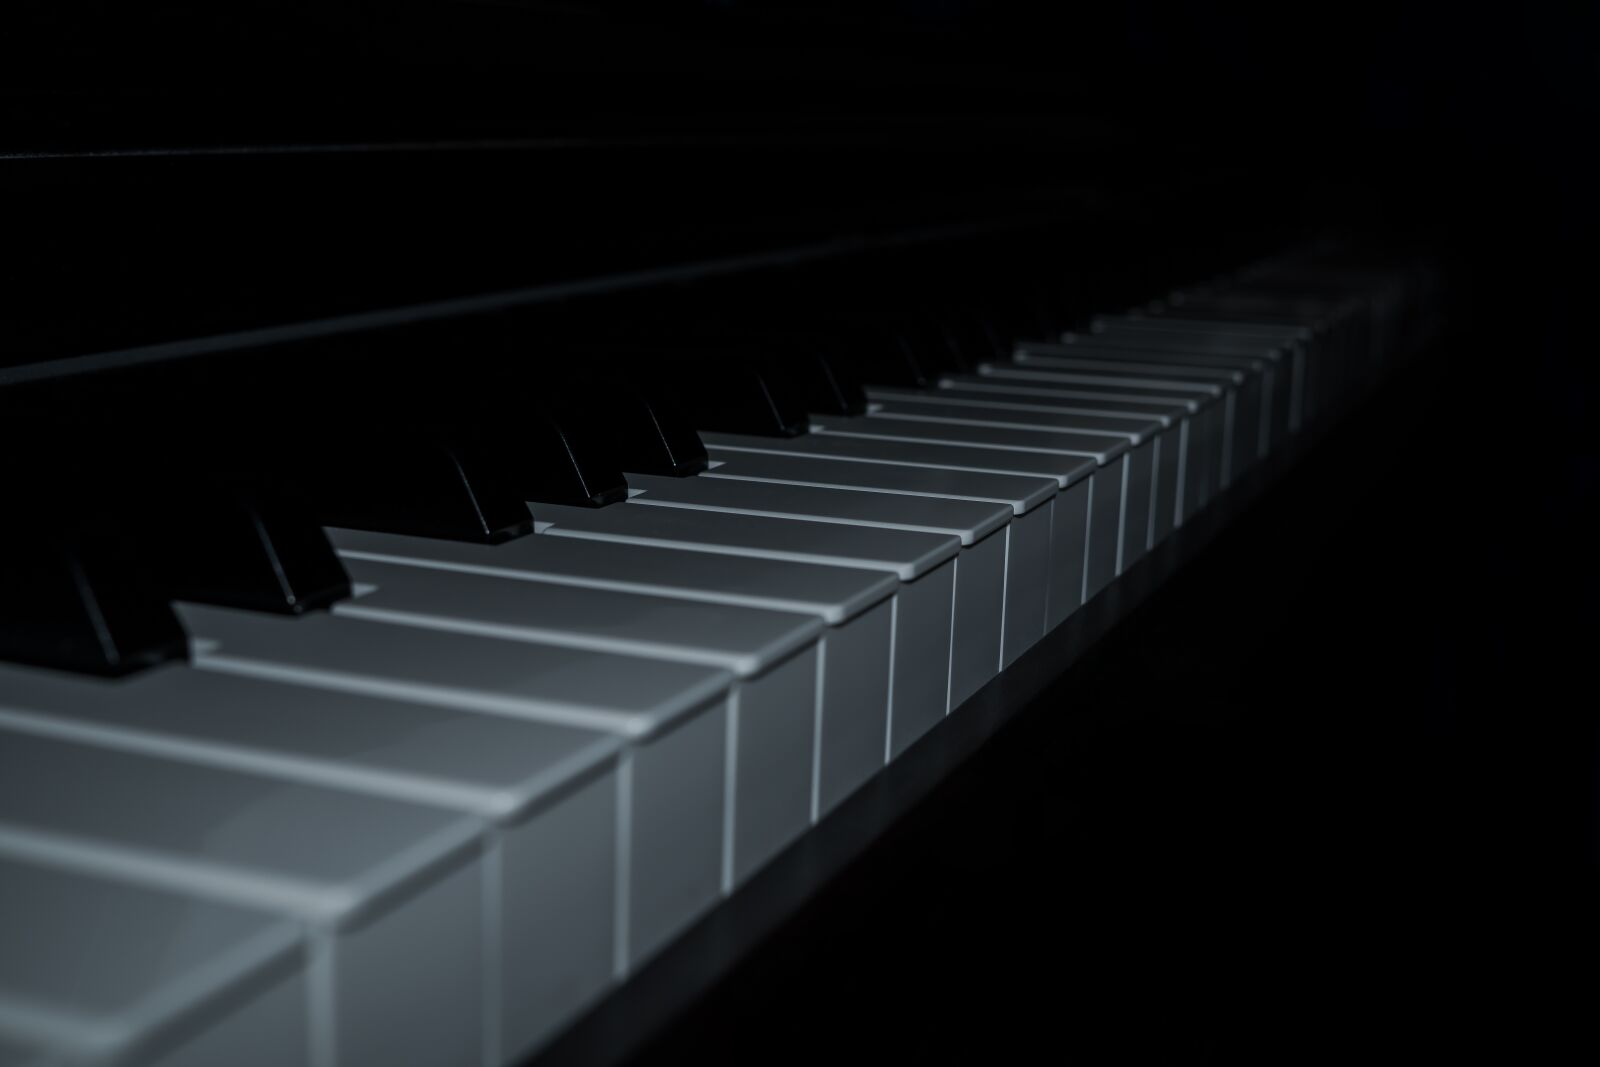 Sony a6300 sample photo. Piano, keys, piano keyboard photography